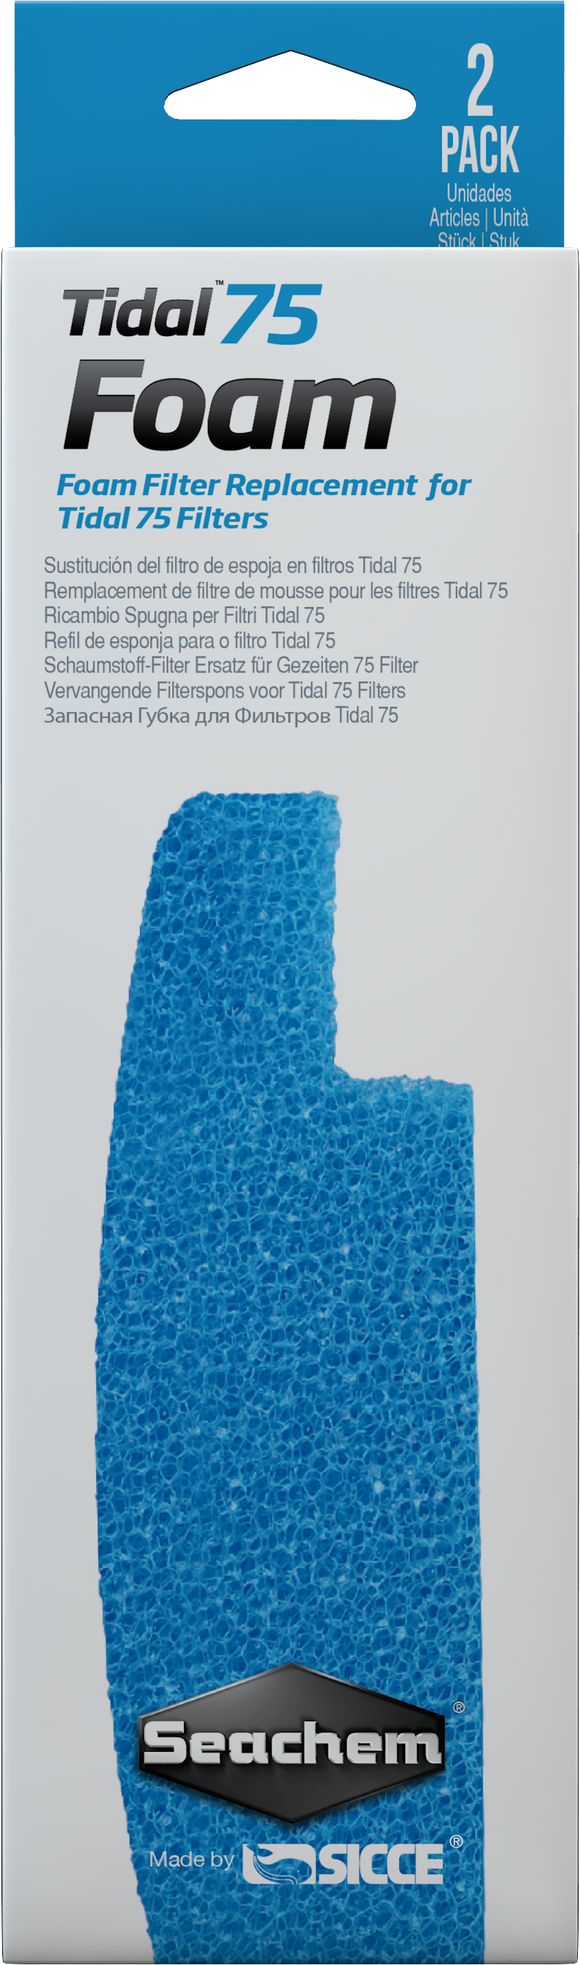 Seachem Tidal 75 Blue Foam Filter Sponges, 2 Pack